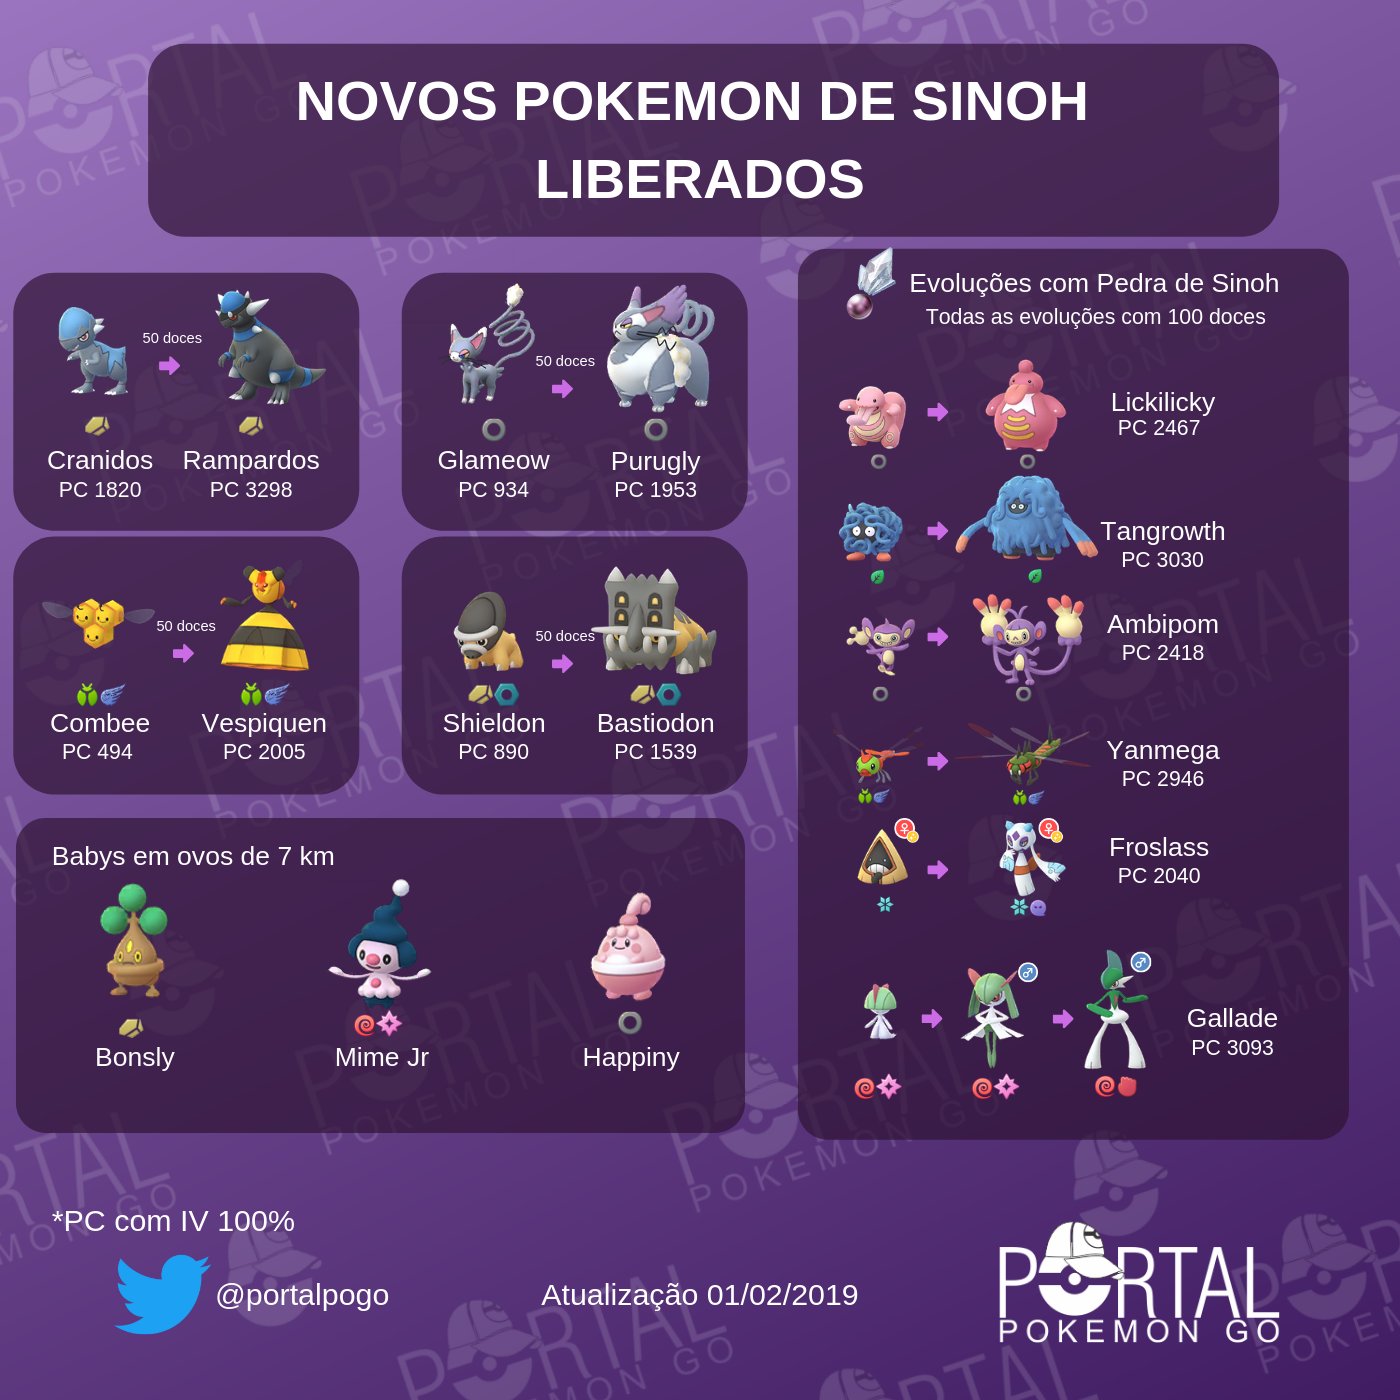 PokéPoa - Pokémon Go em Porto Alegre - Mewtwo volta pras raids